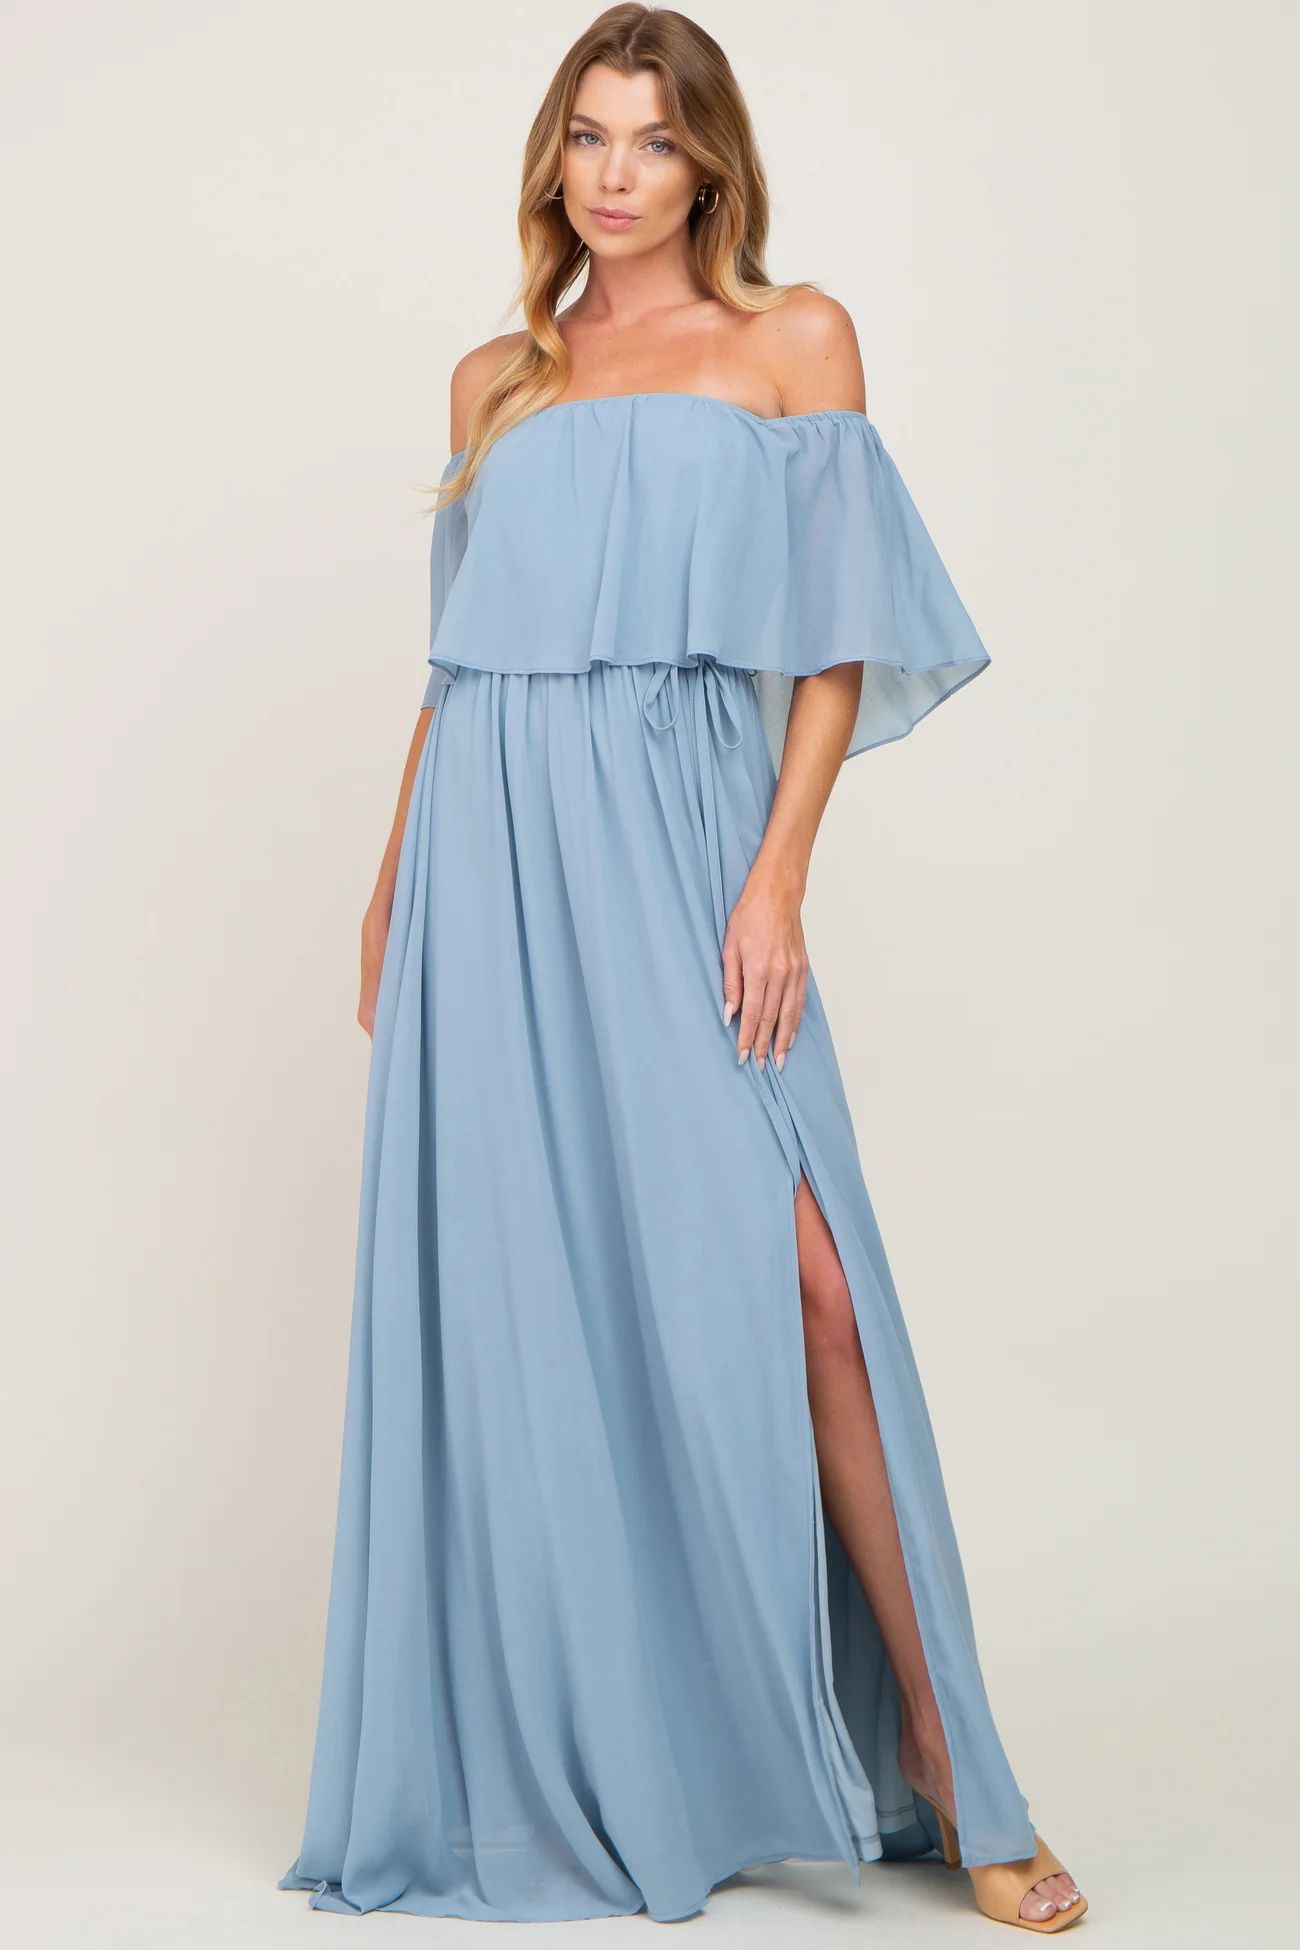 Light Blue Chiffon Off Shoulder Maternity Maxi Dress | PinkBlush Maternity